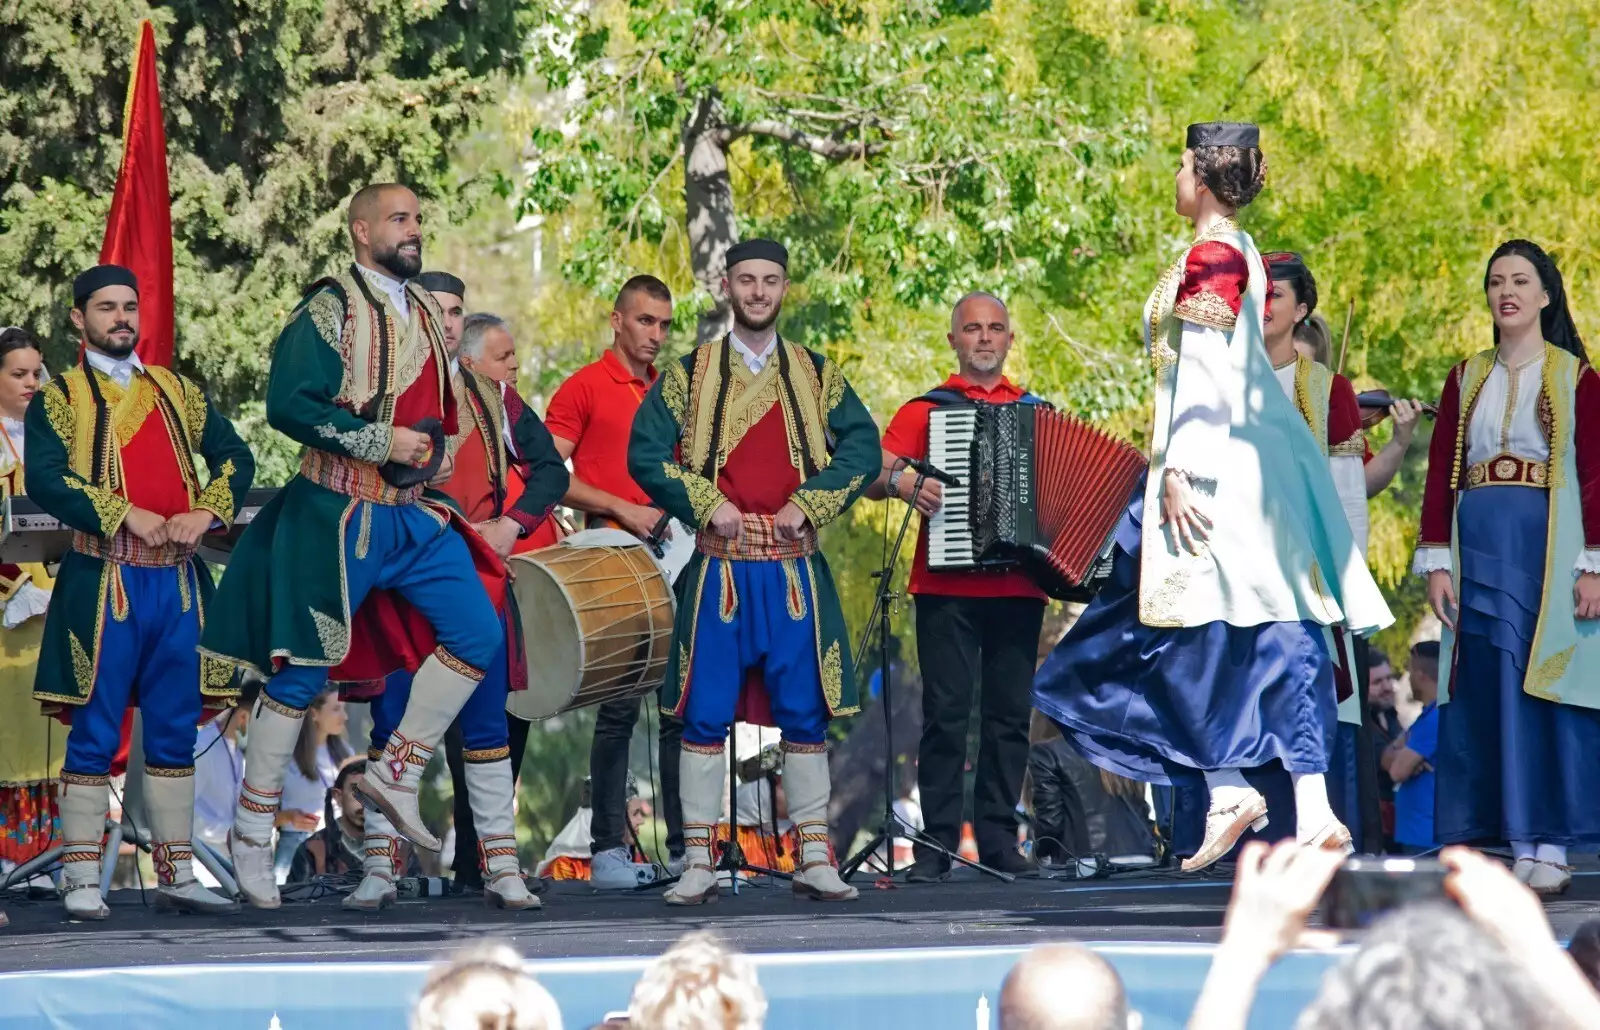 İzmir büyükşehir belediyesi’nin düzenlediği 15. Balkanlılar halk dansları ve kültürü festivali devam ediyor.